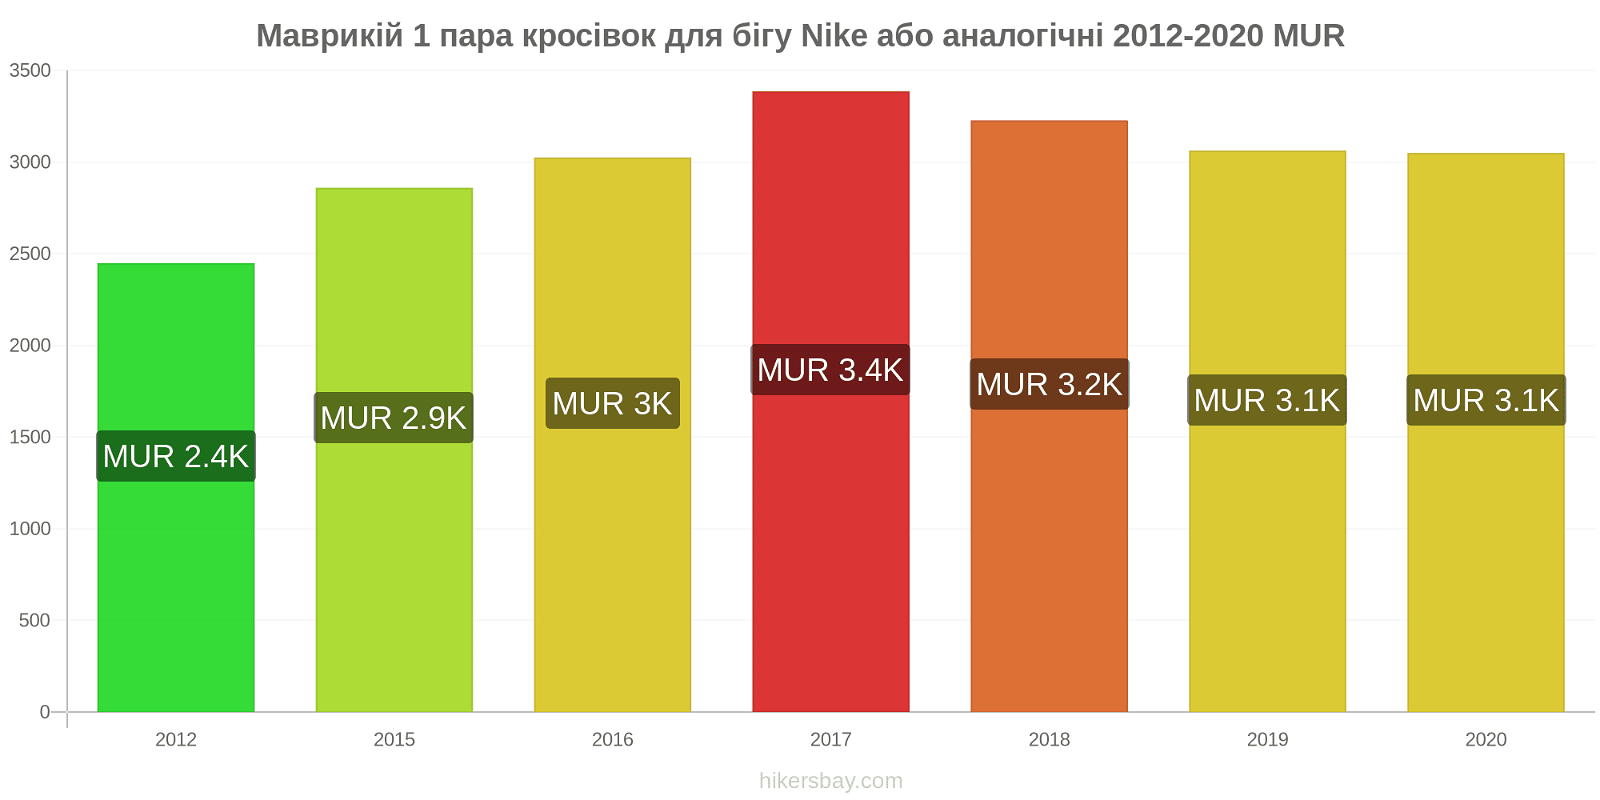 Маврикій зміни цін 1 пара кросівок для бігу Nike або аналогічні hikersbay.com